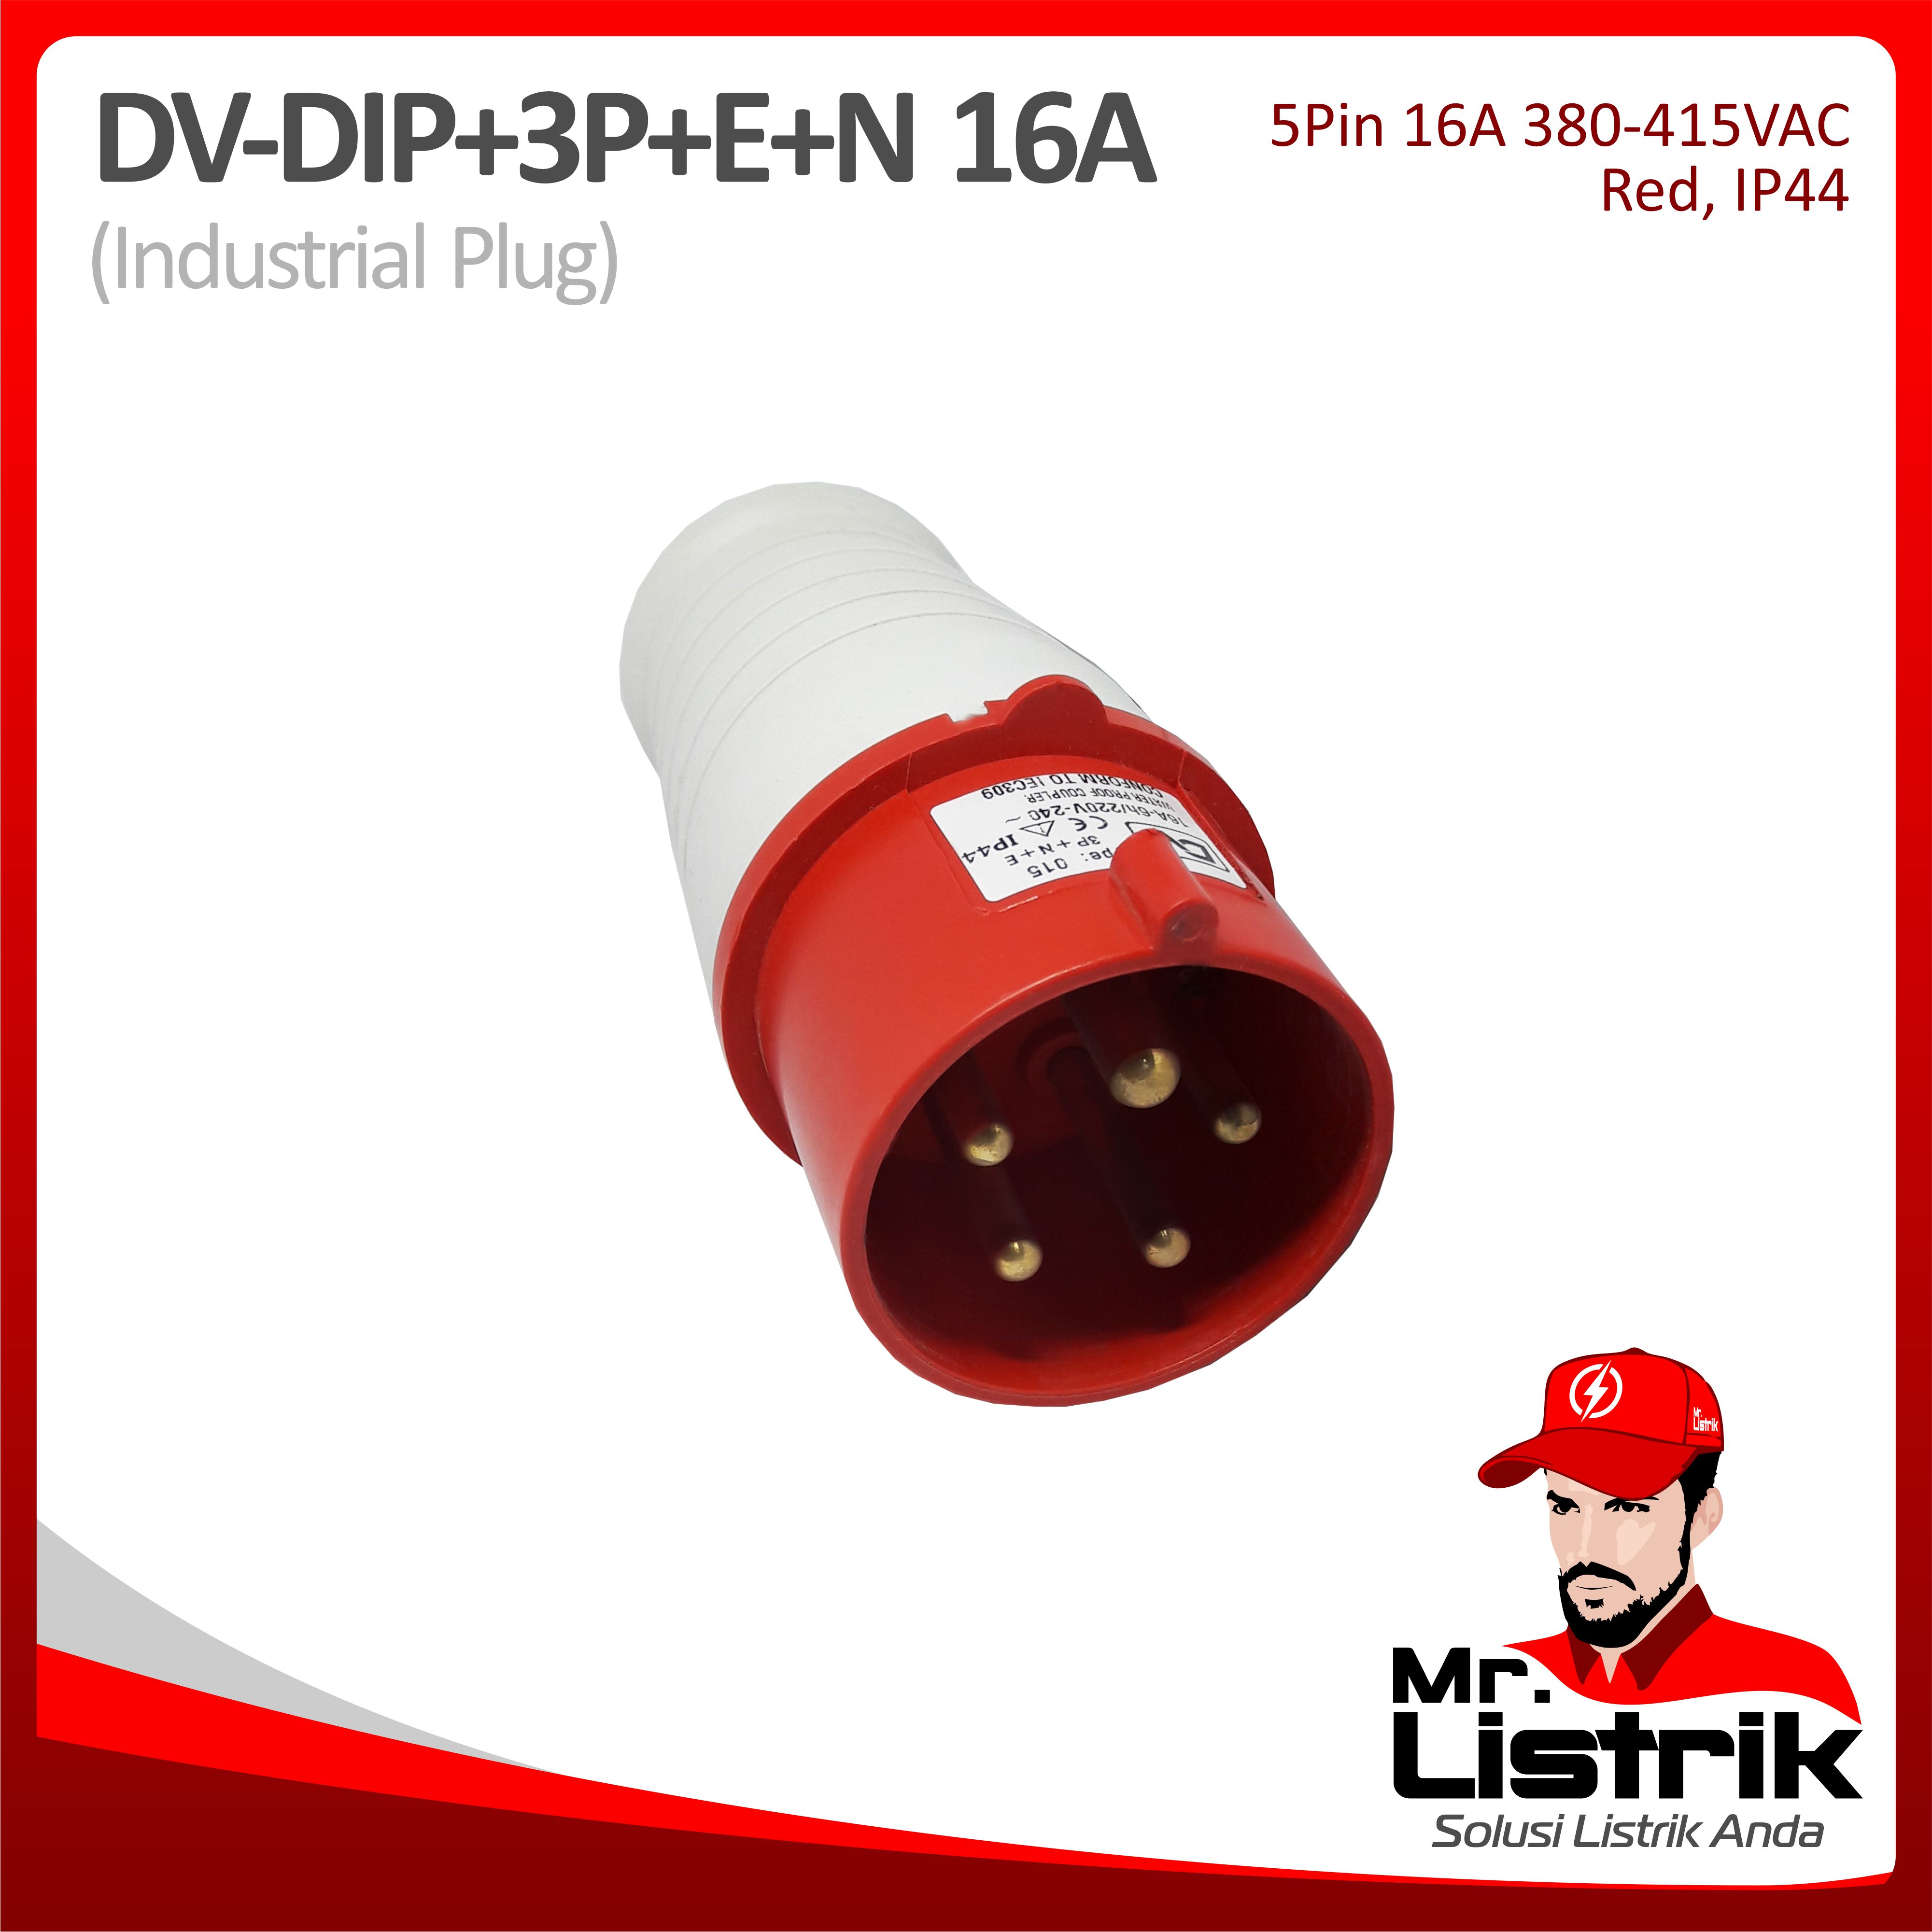 Industrial Plug 5 Pin 16A DV DIP-3P+E+N-16A